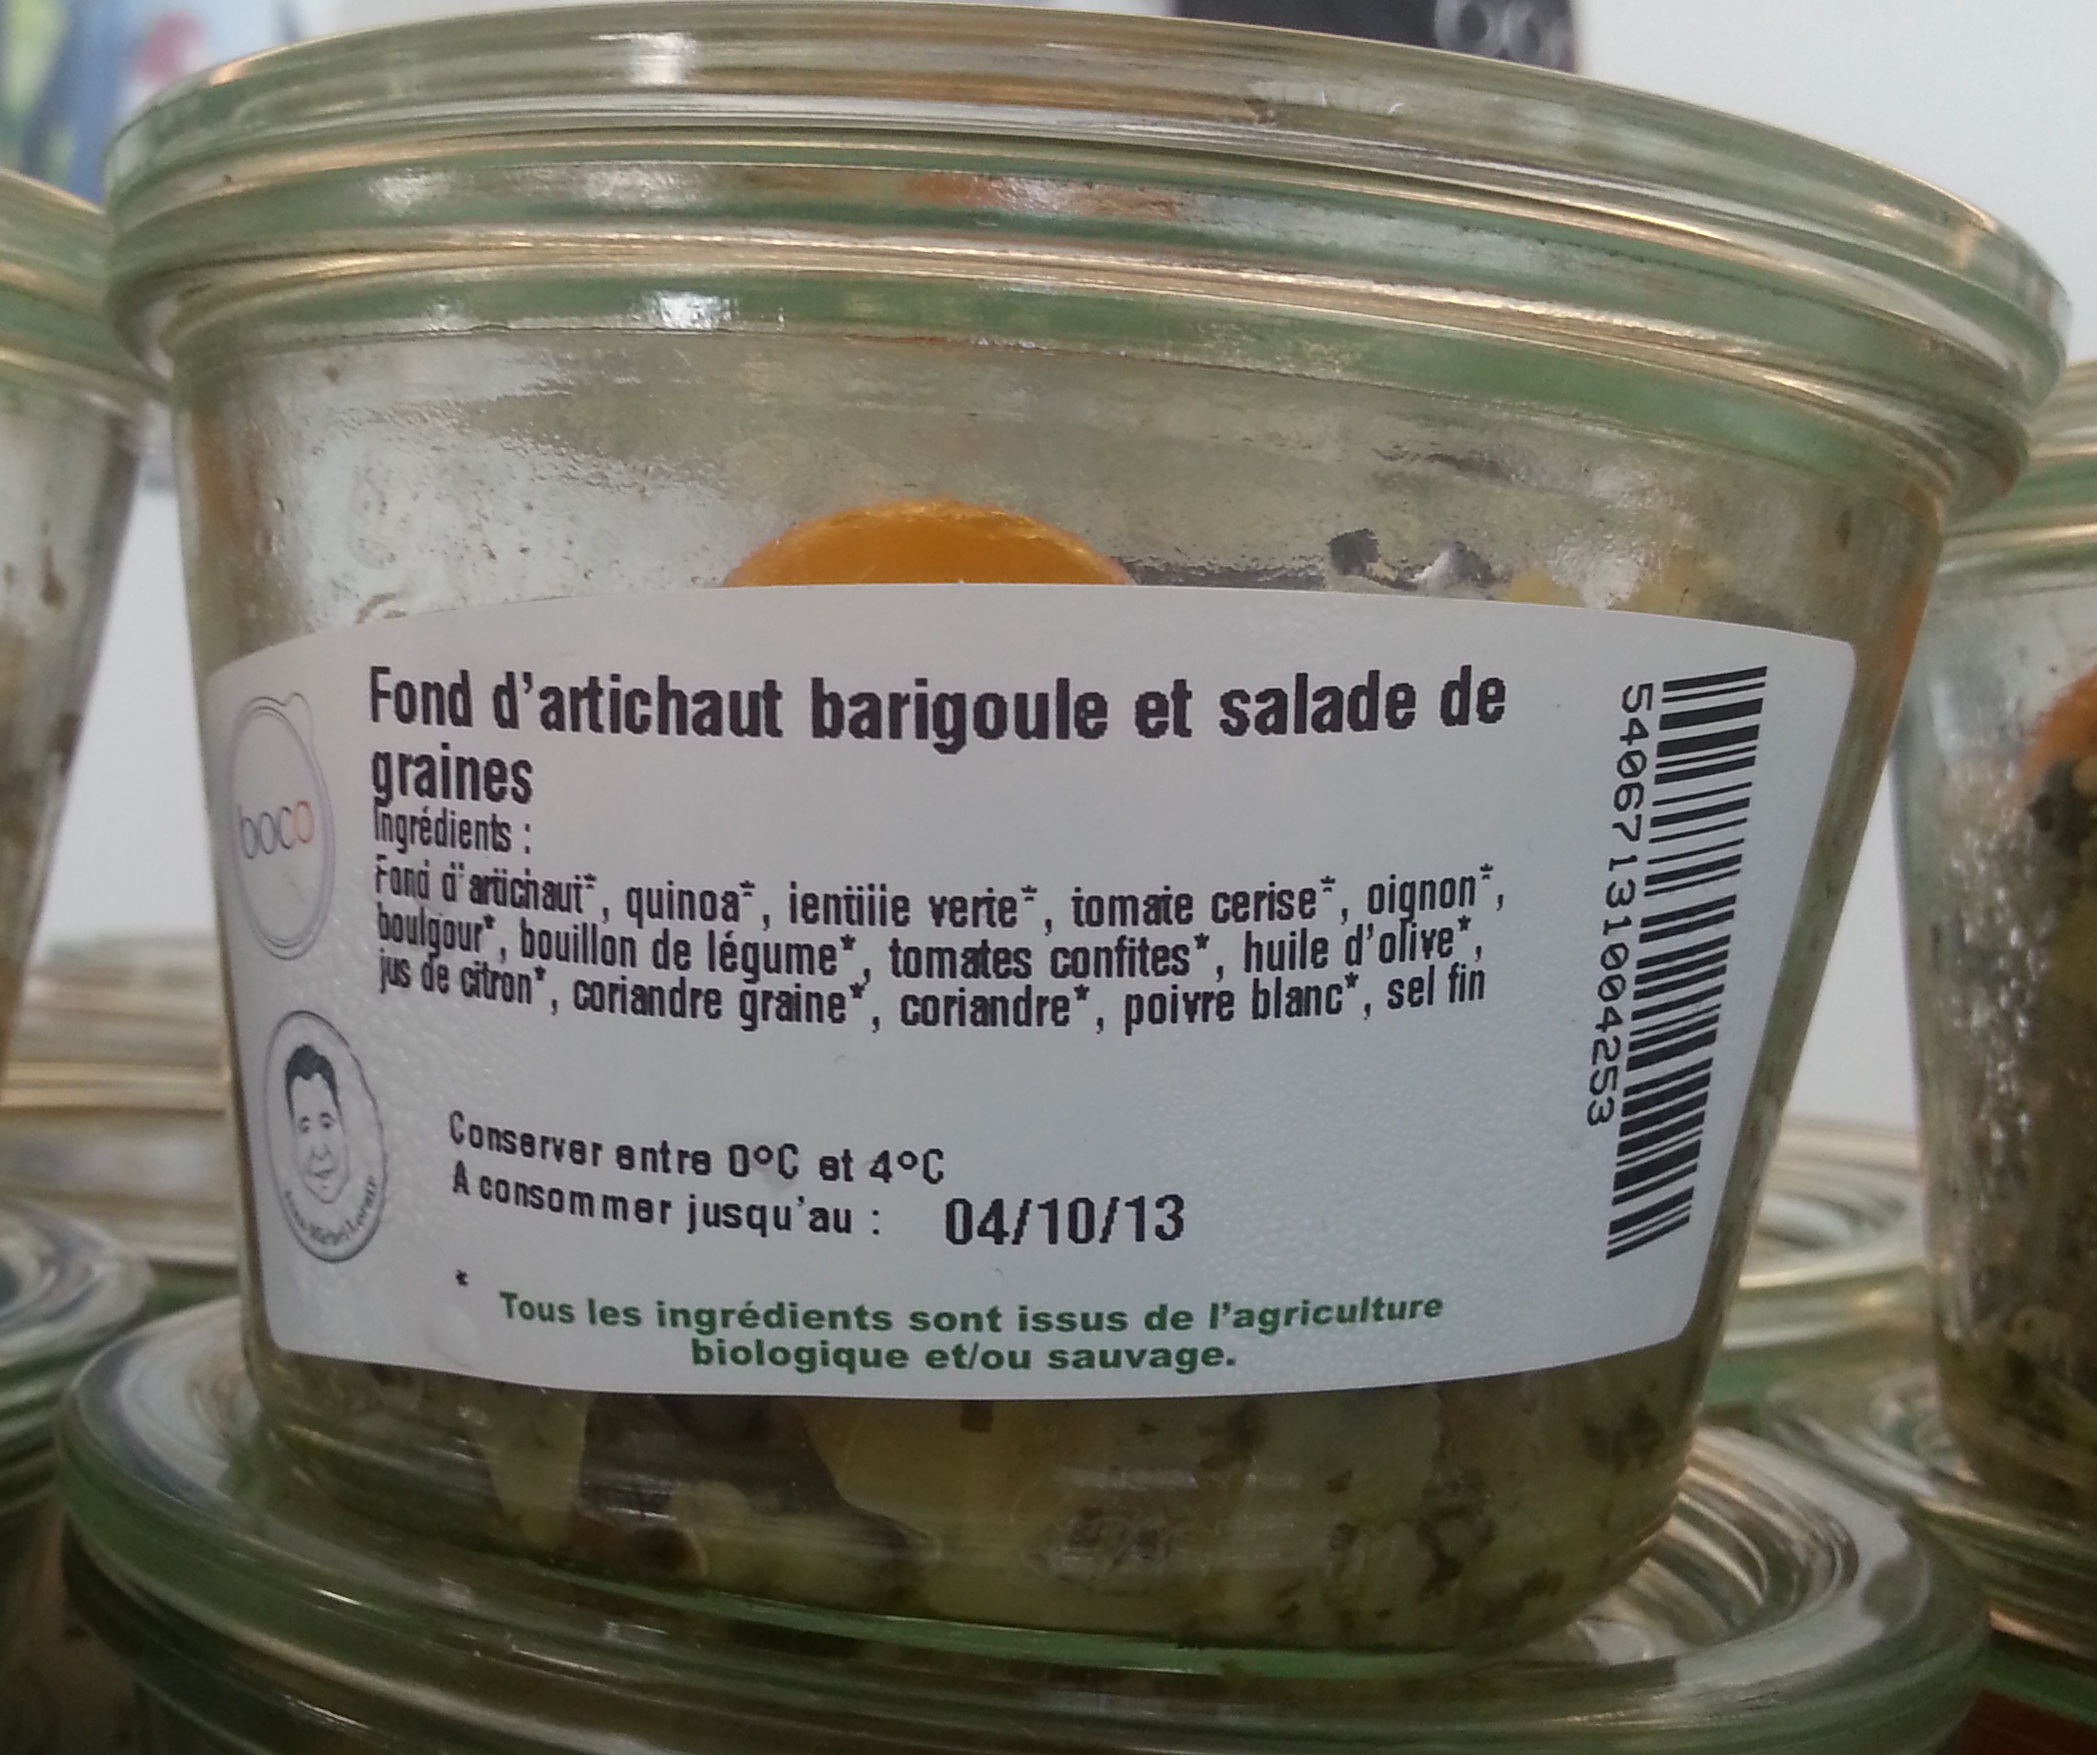 Fond d'artichaut barigoule et salade de graines - Product - fr